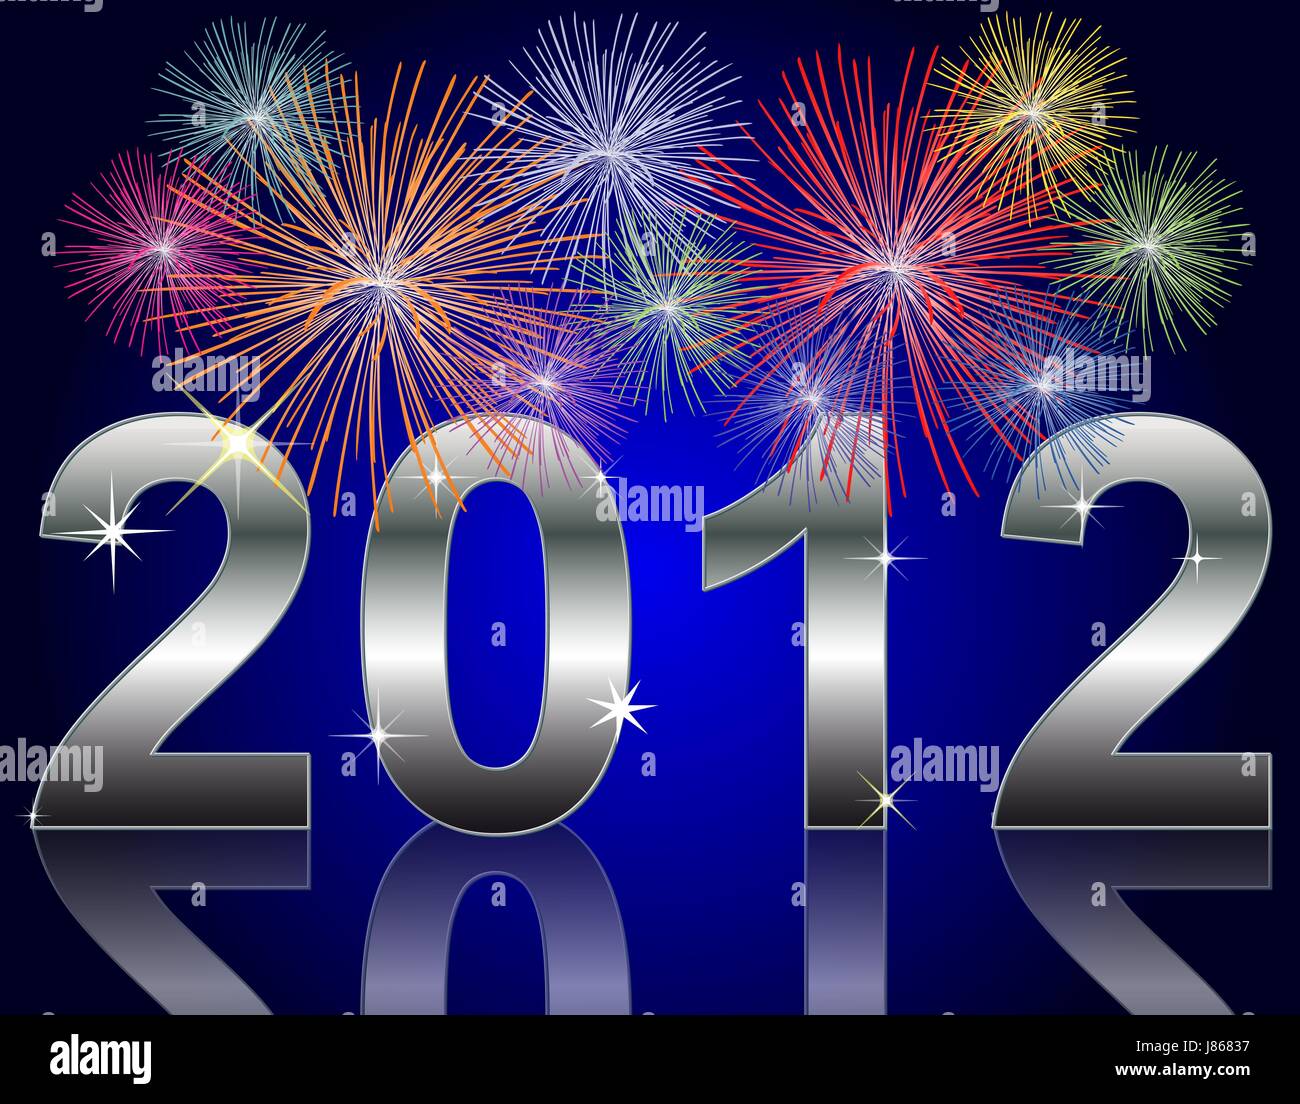 Silvester, Neujahr, Rakete, News, Feuerwerk, Feuerwerk, Farbenspiel, Datum  Stockfotografie - Alamy